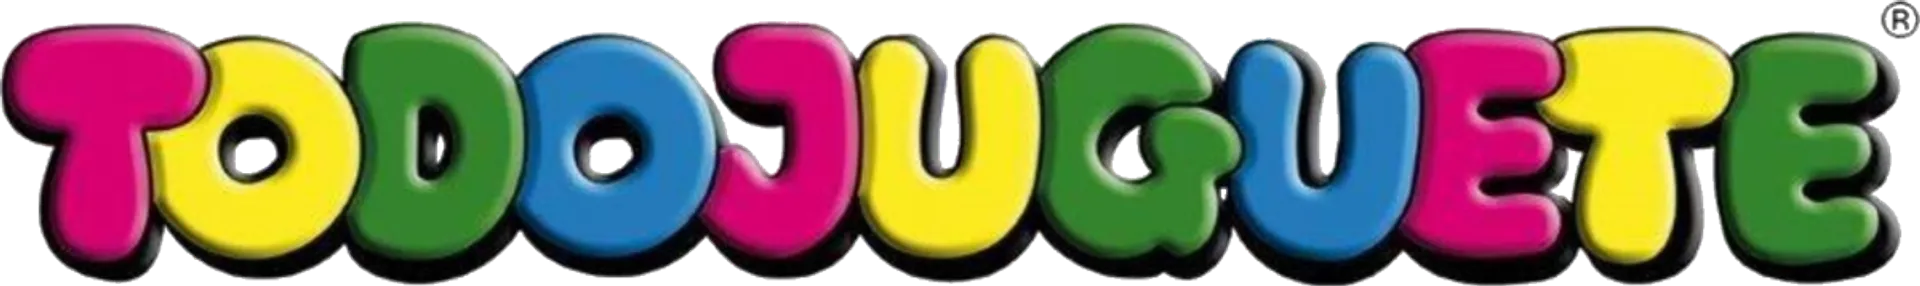 TODOJUGUETE logo